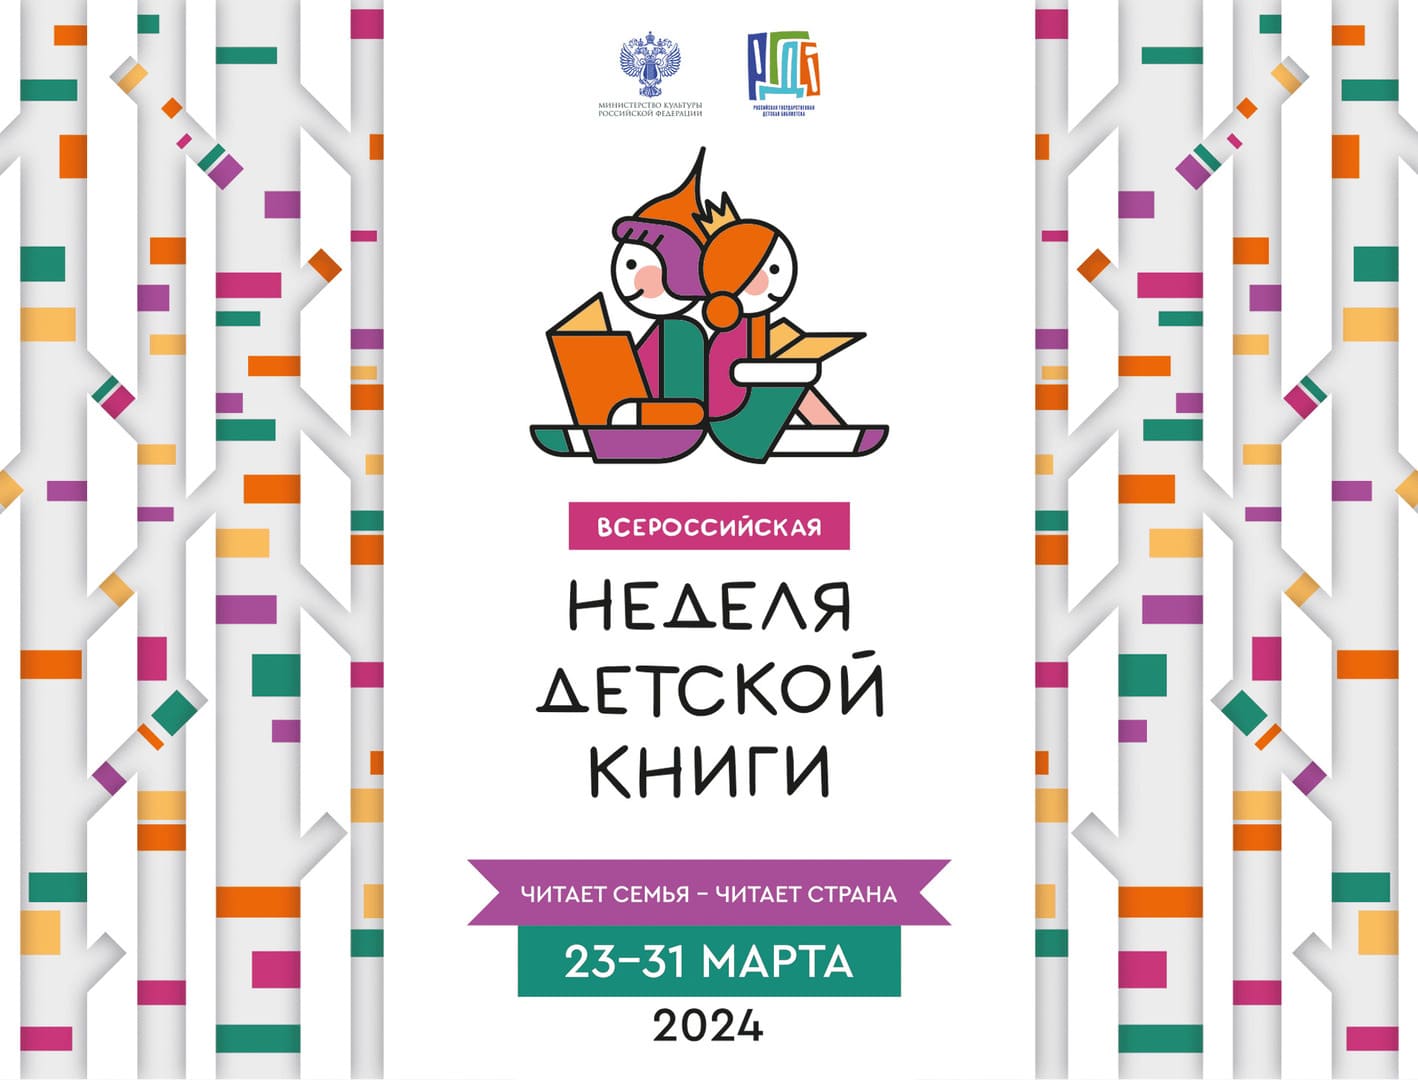 Стали известны результаты конкурса на создание логотипа и плаката Всероссийской Недели детской книги